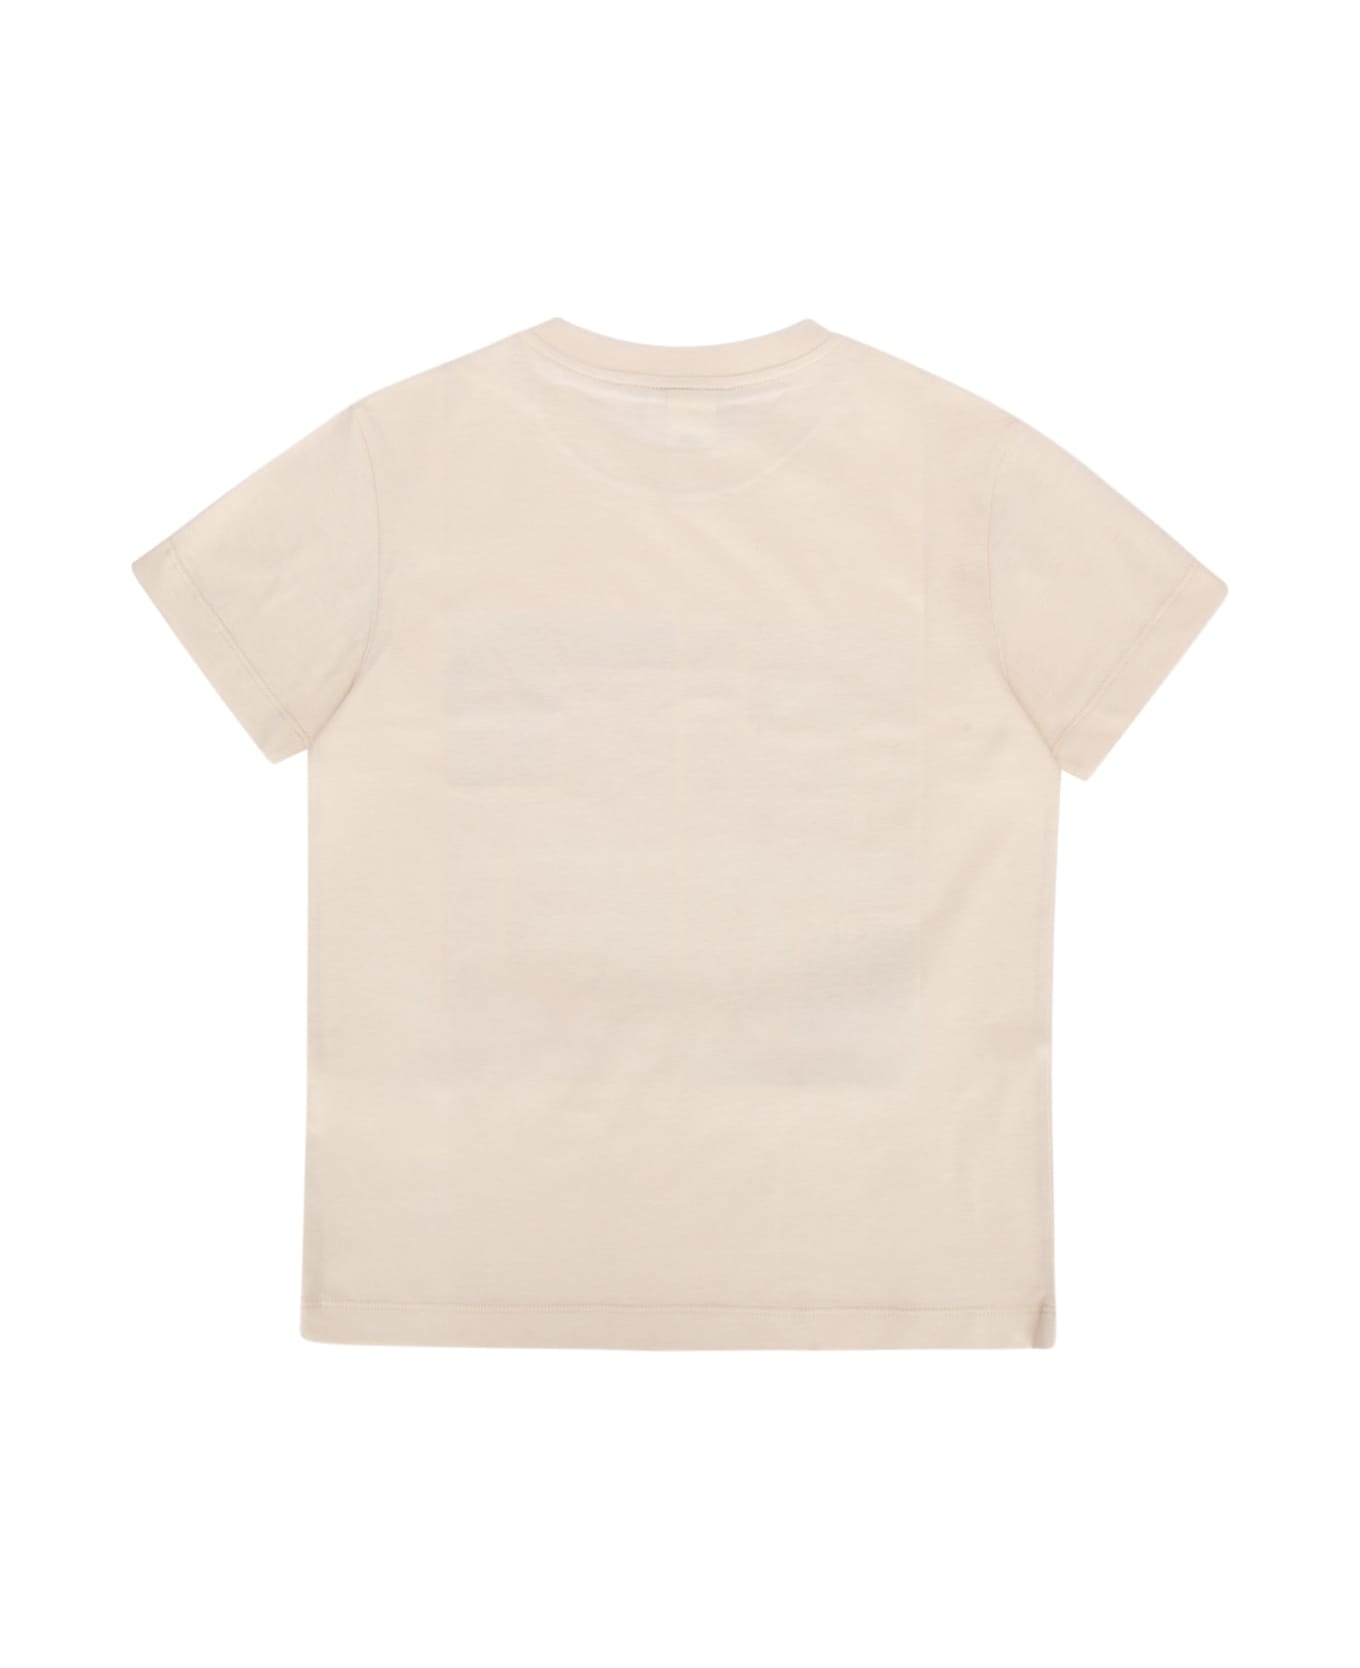 Fendi T-shirt - SHELLORANGEMULTIC